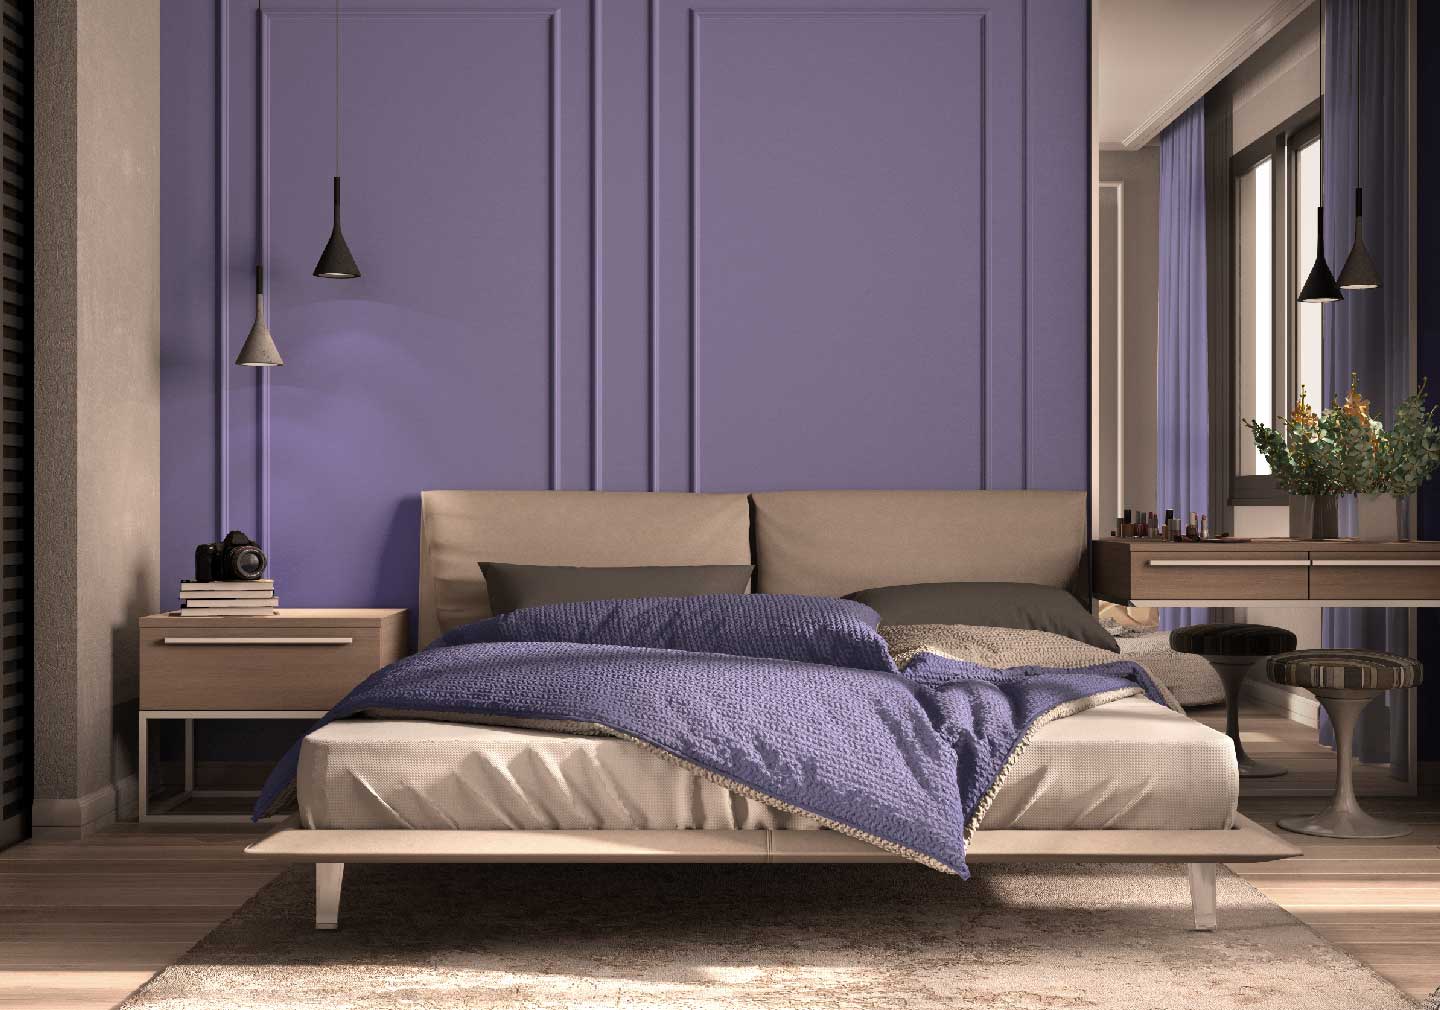 modern interior design for bed room